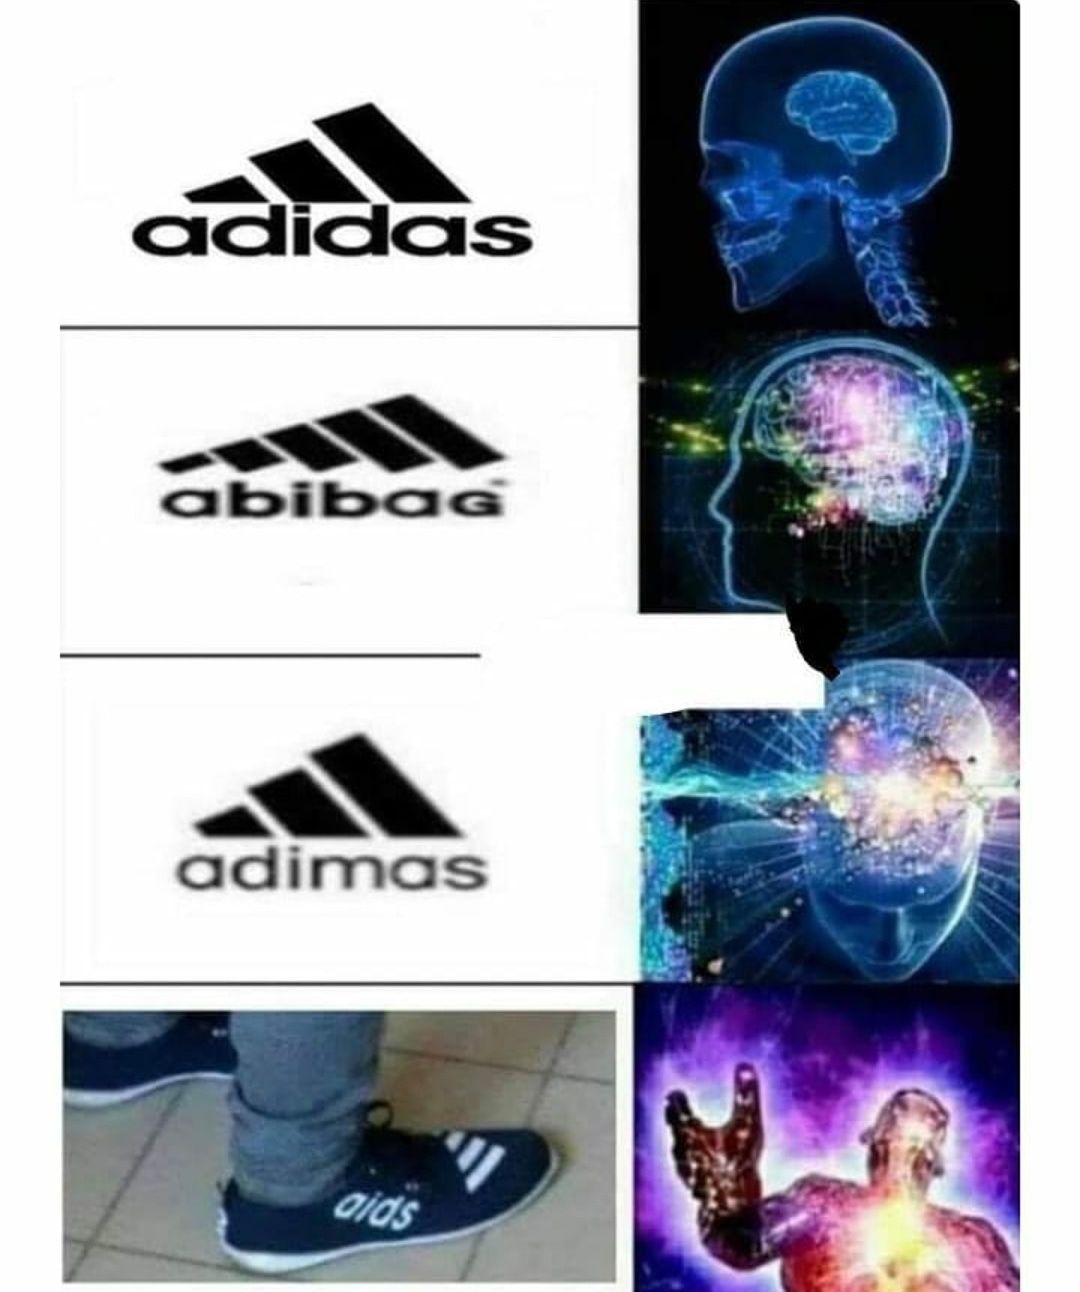 I prefer abidas tho